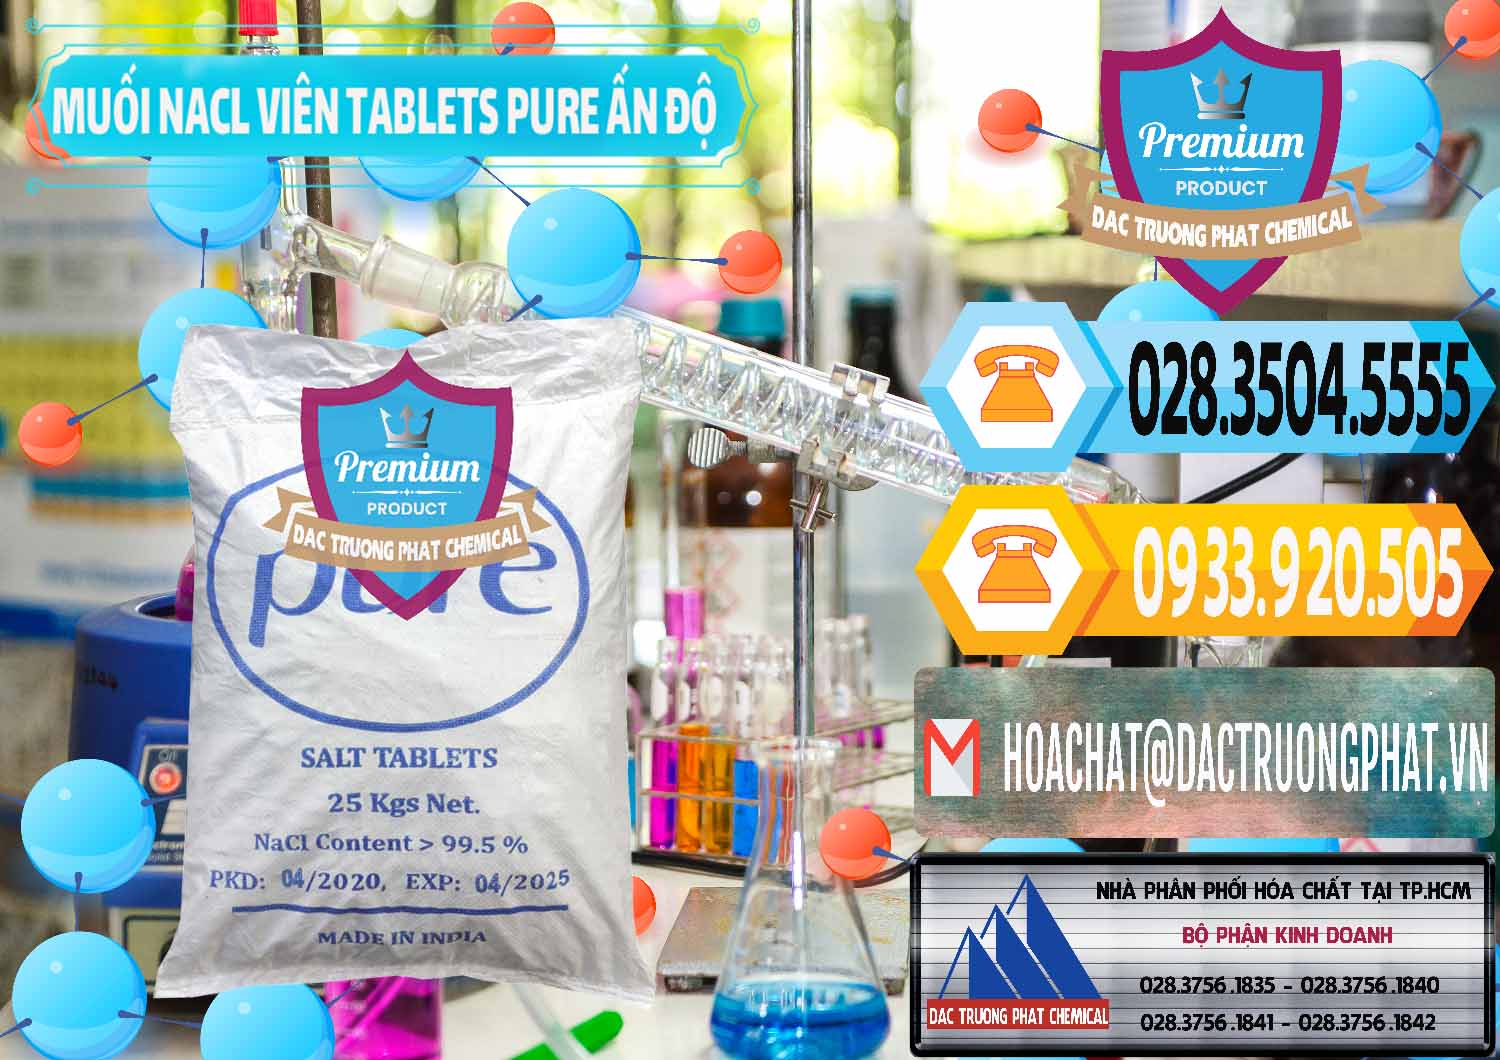 Đơn vị chuyên cung ứng & bán Muối NaCL – Sodium Chloride Dạng Viên Tablets Pure Ấn Độ India - 0294 - Công ty cung ứng và phân phối hóa chất tại TP.HCM - hoachattayrua.net